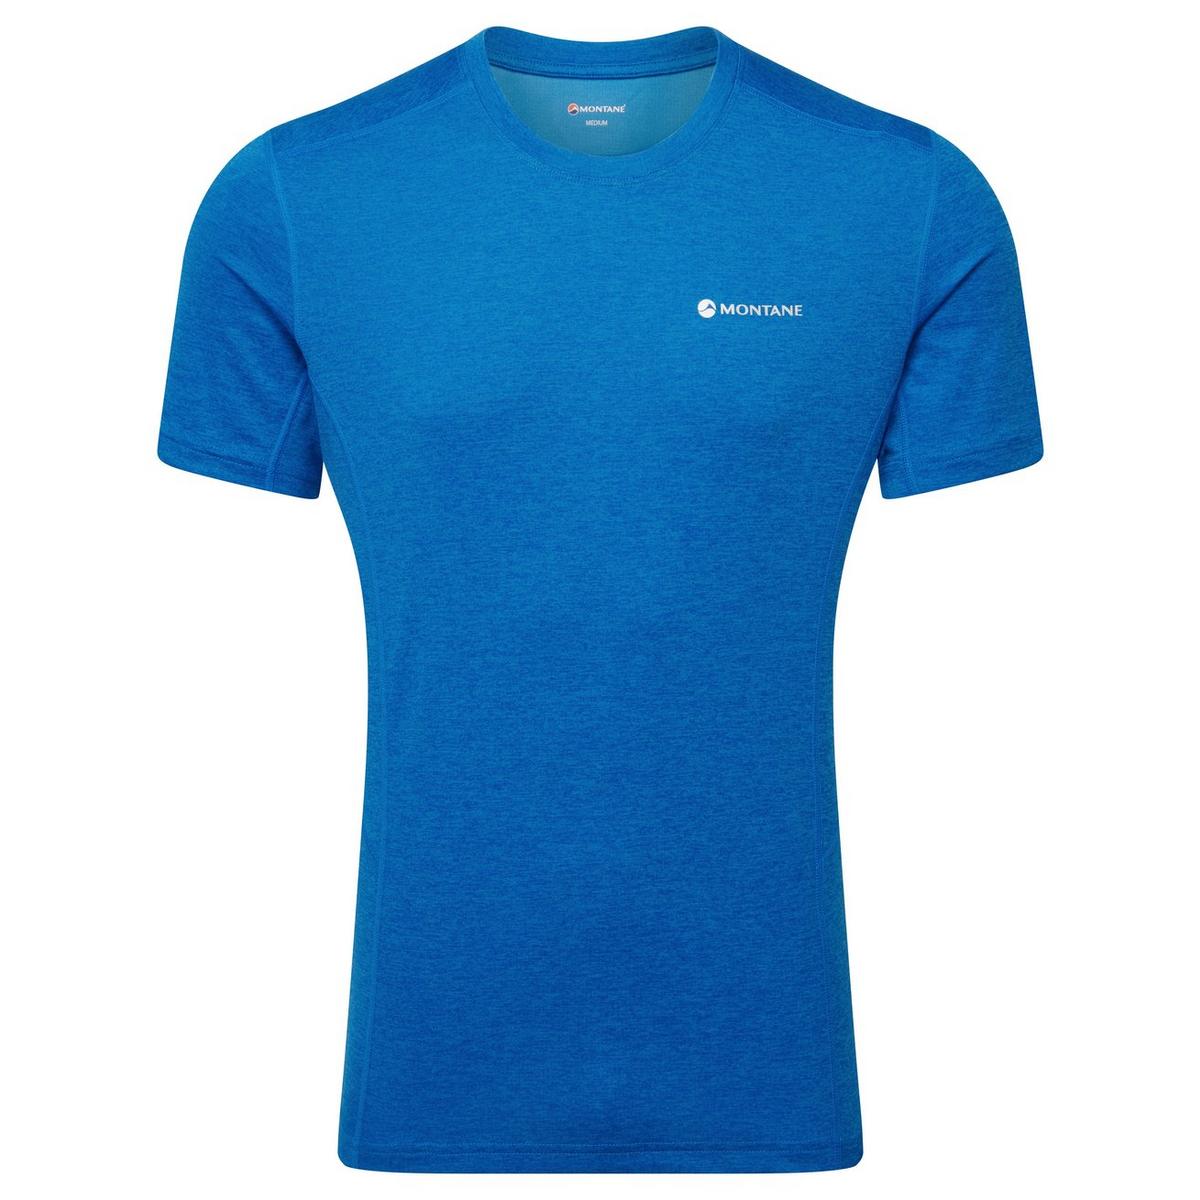 Montane Men's Dart T-Shirt - Blue